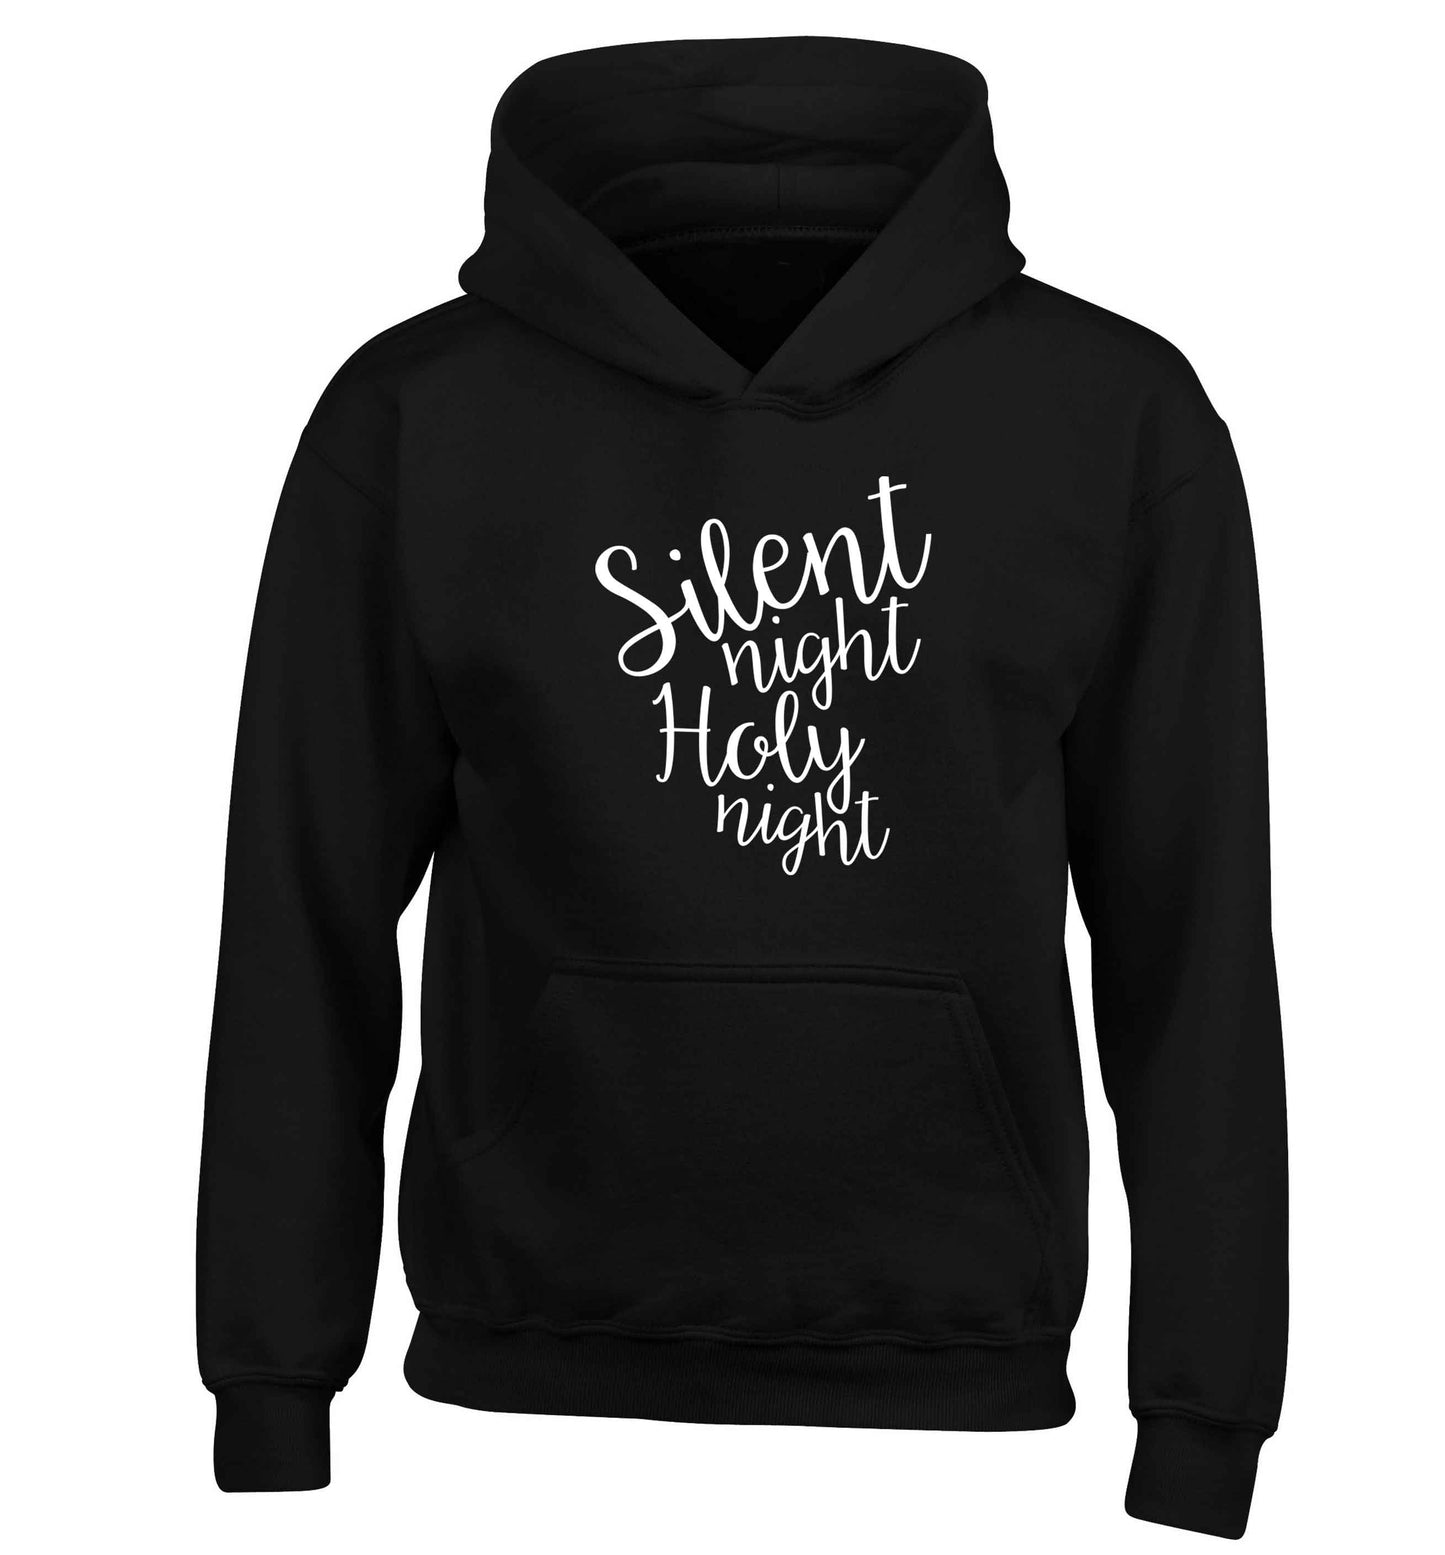 Silent night holy night children's black hoodie 12-13 Years